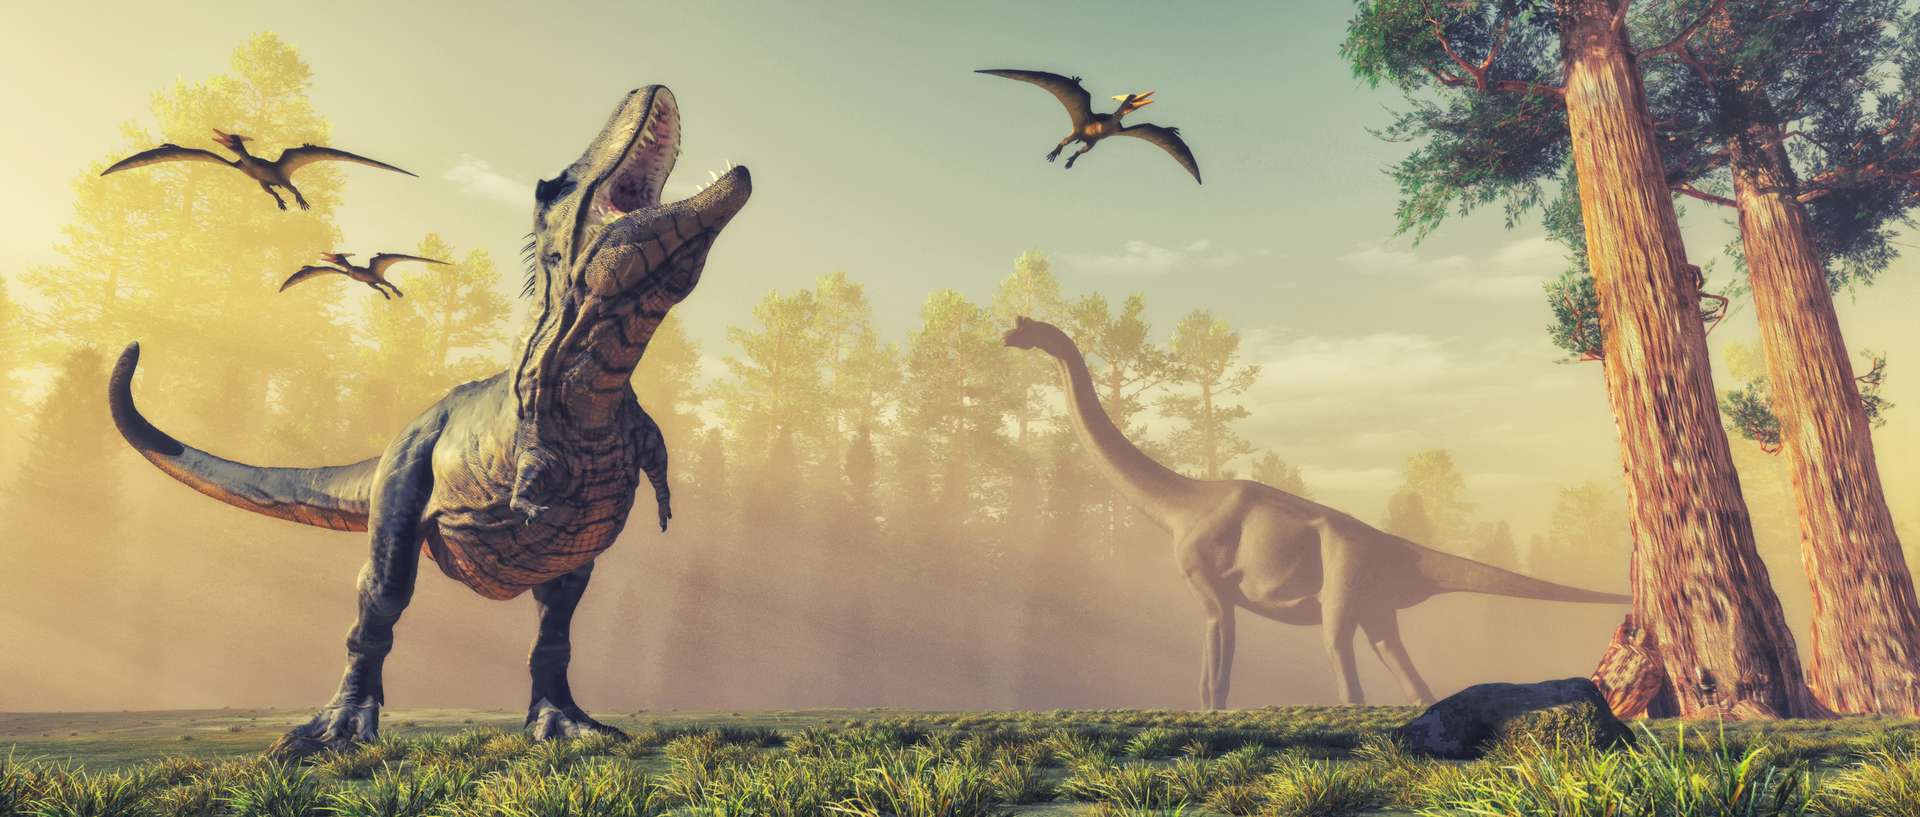 Les tyrannosaures à avoir vécu sur Terre ont été moins nombreux qu’on ne le pensait